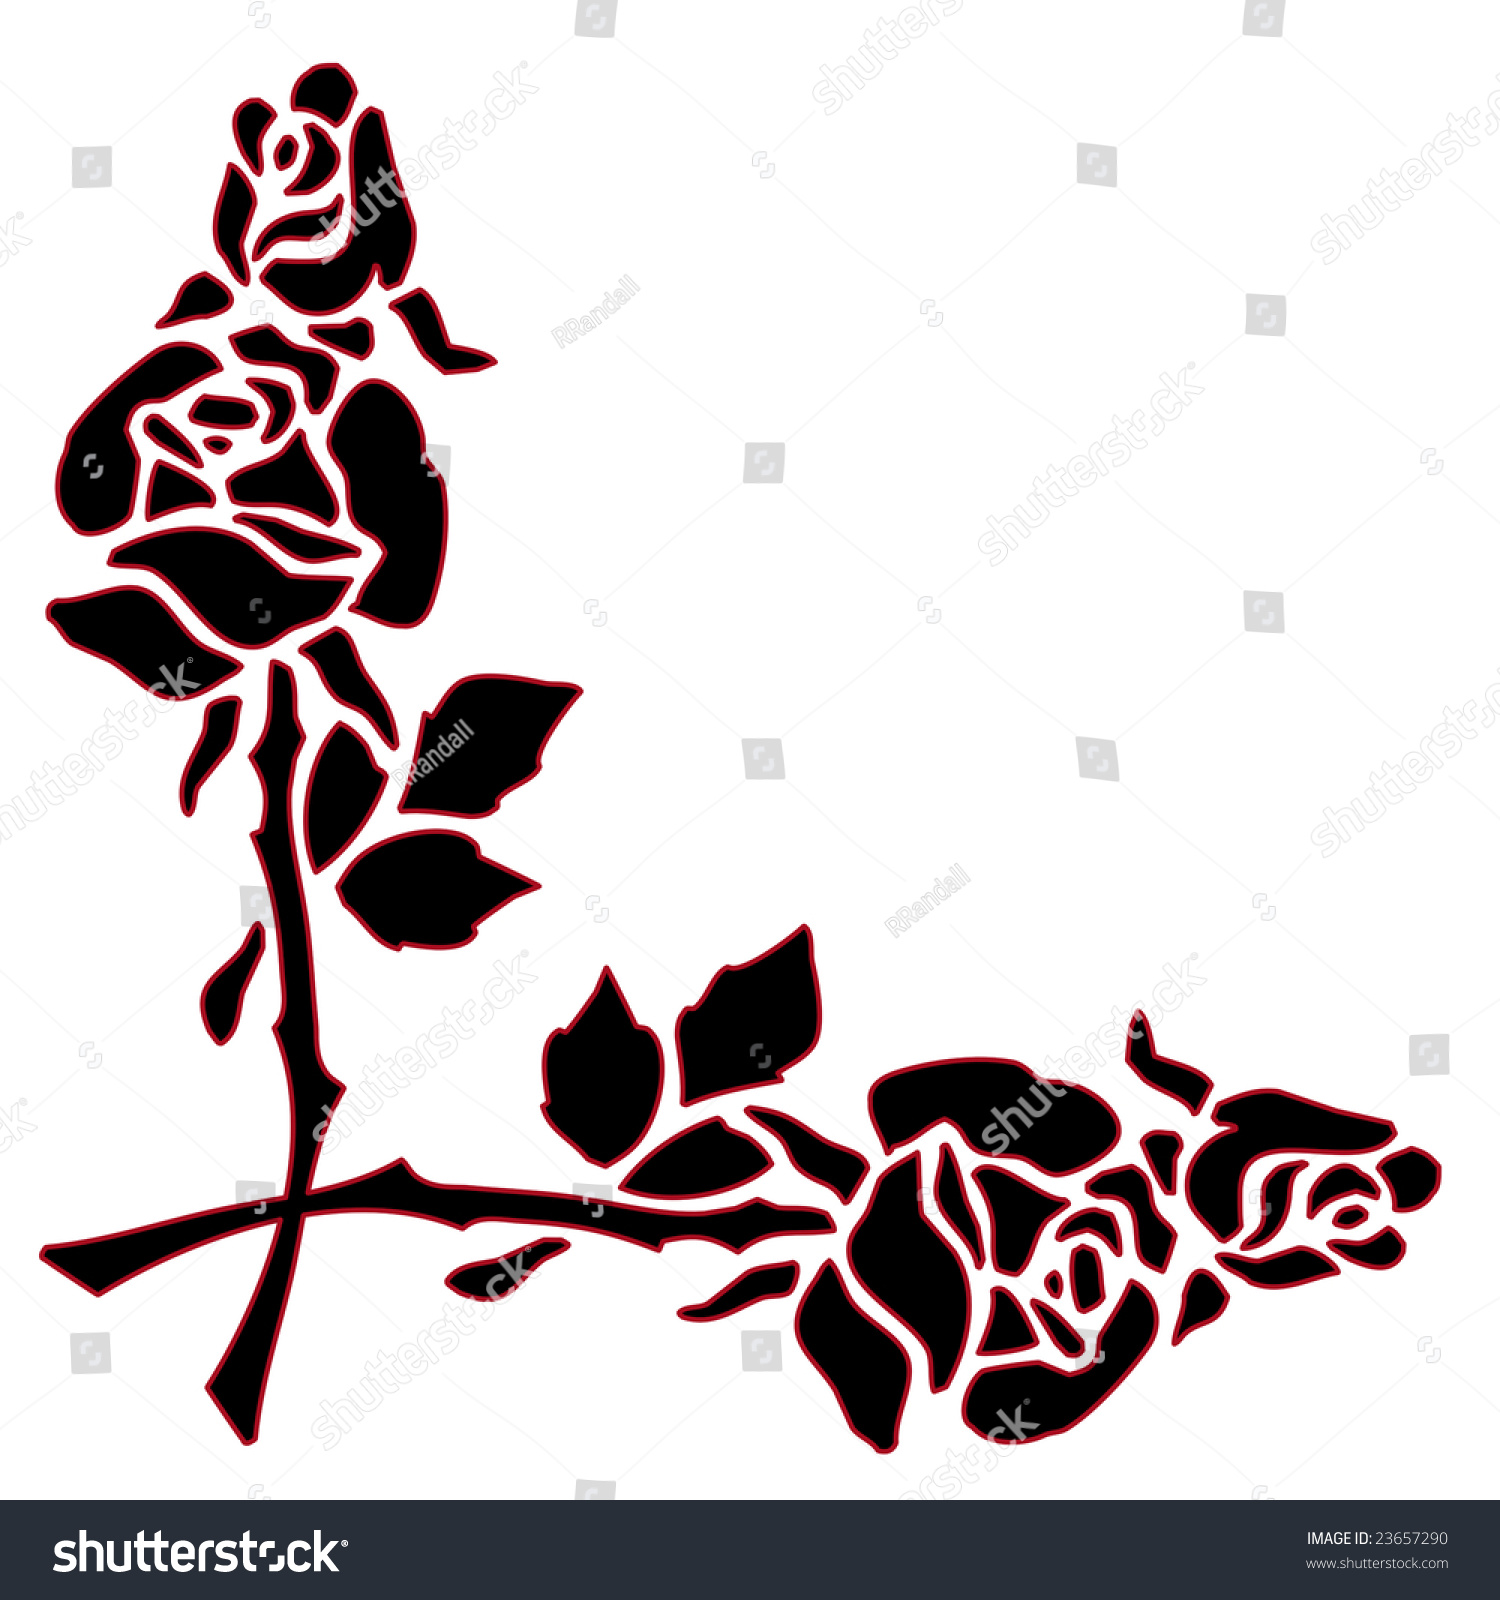 White Rose Border Clip Art